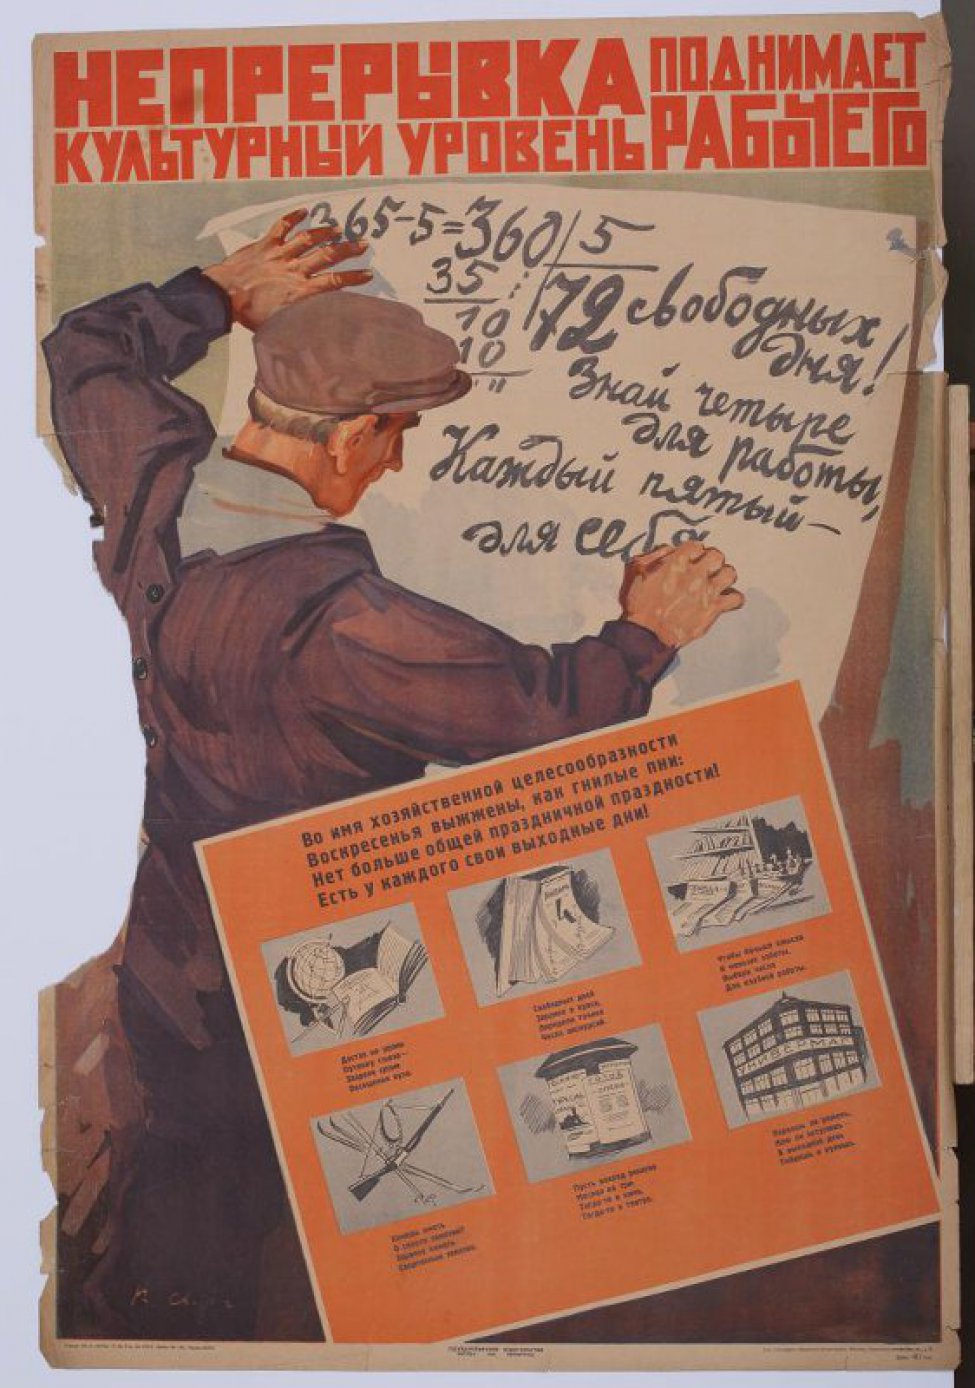 Слева изображён рабочий пишущий на белом листе: "Знай четыре дня работы, каждый пятый для себя". Ниже лист с шестью рисунками с текстом: "Во имя... купишь".